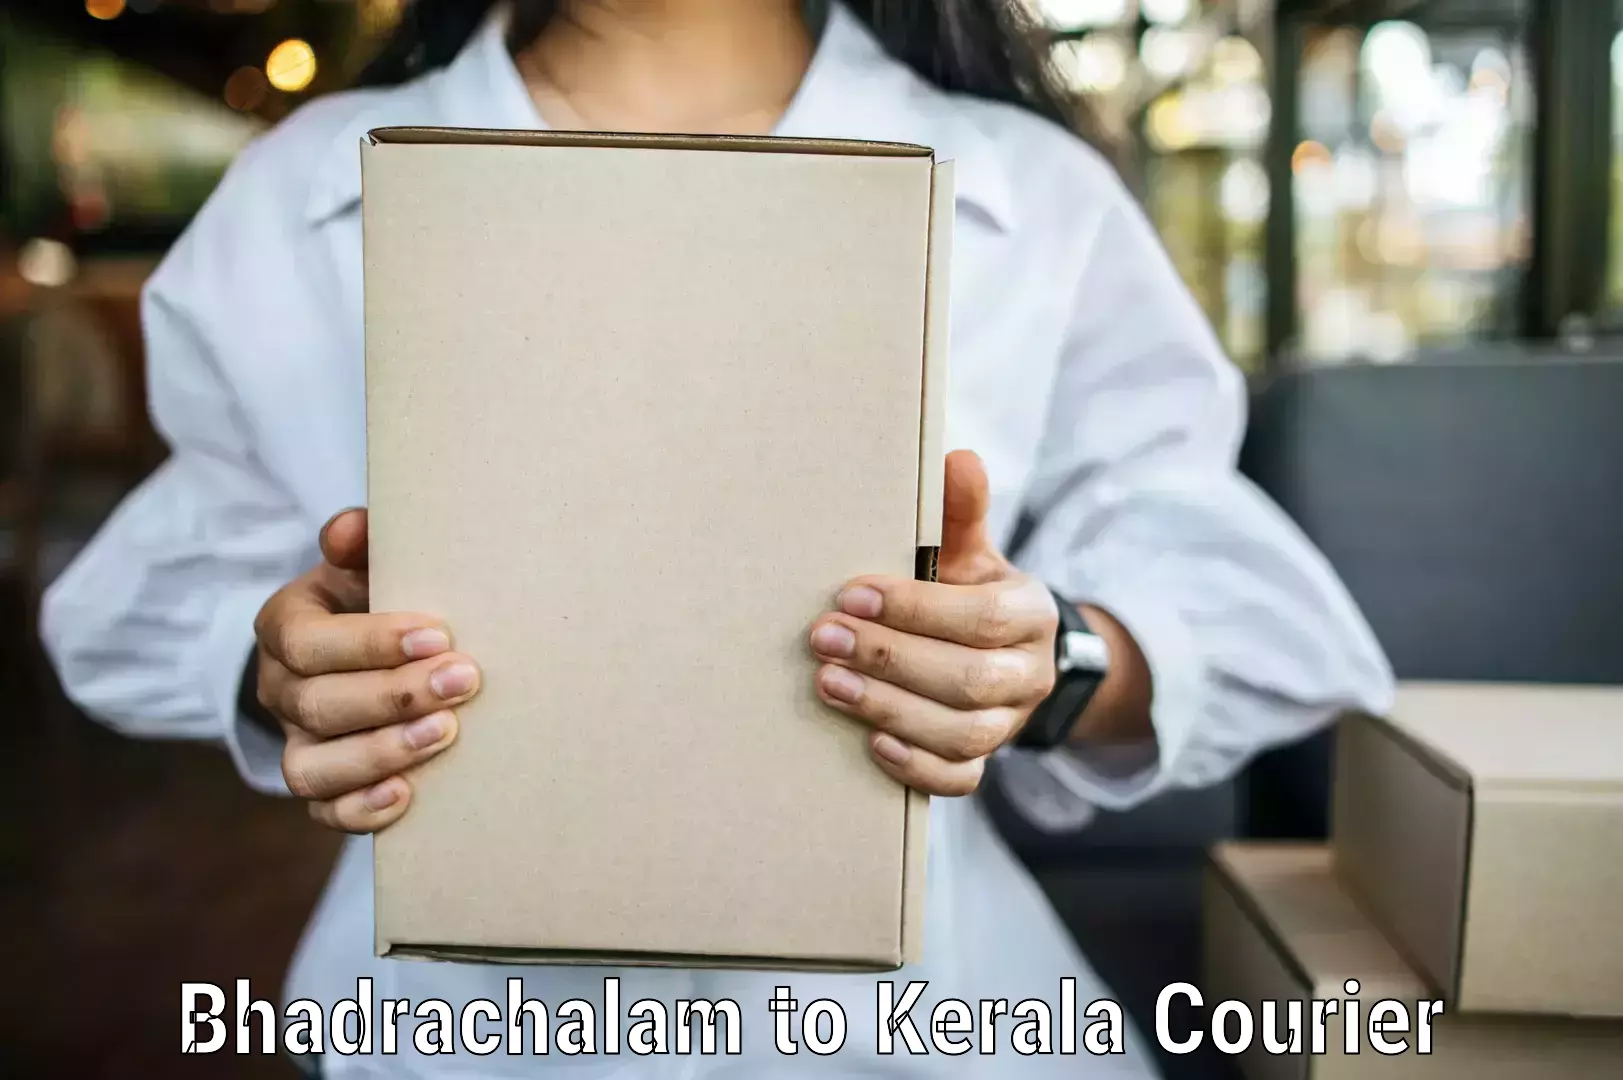 Modern courier technology Bhadrachalam to Kerala University Thiruvananthapuram